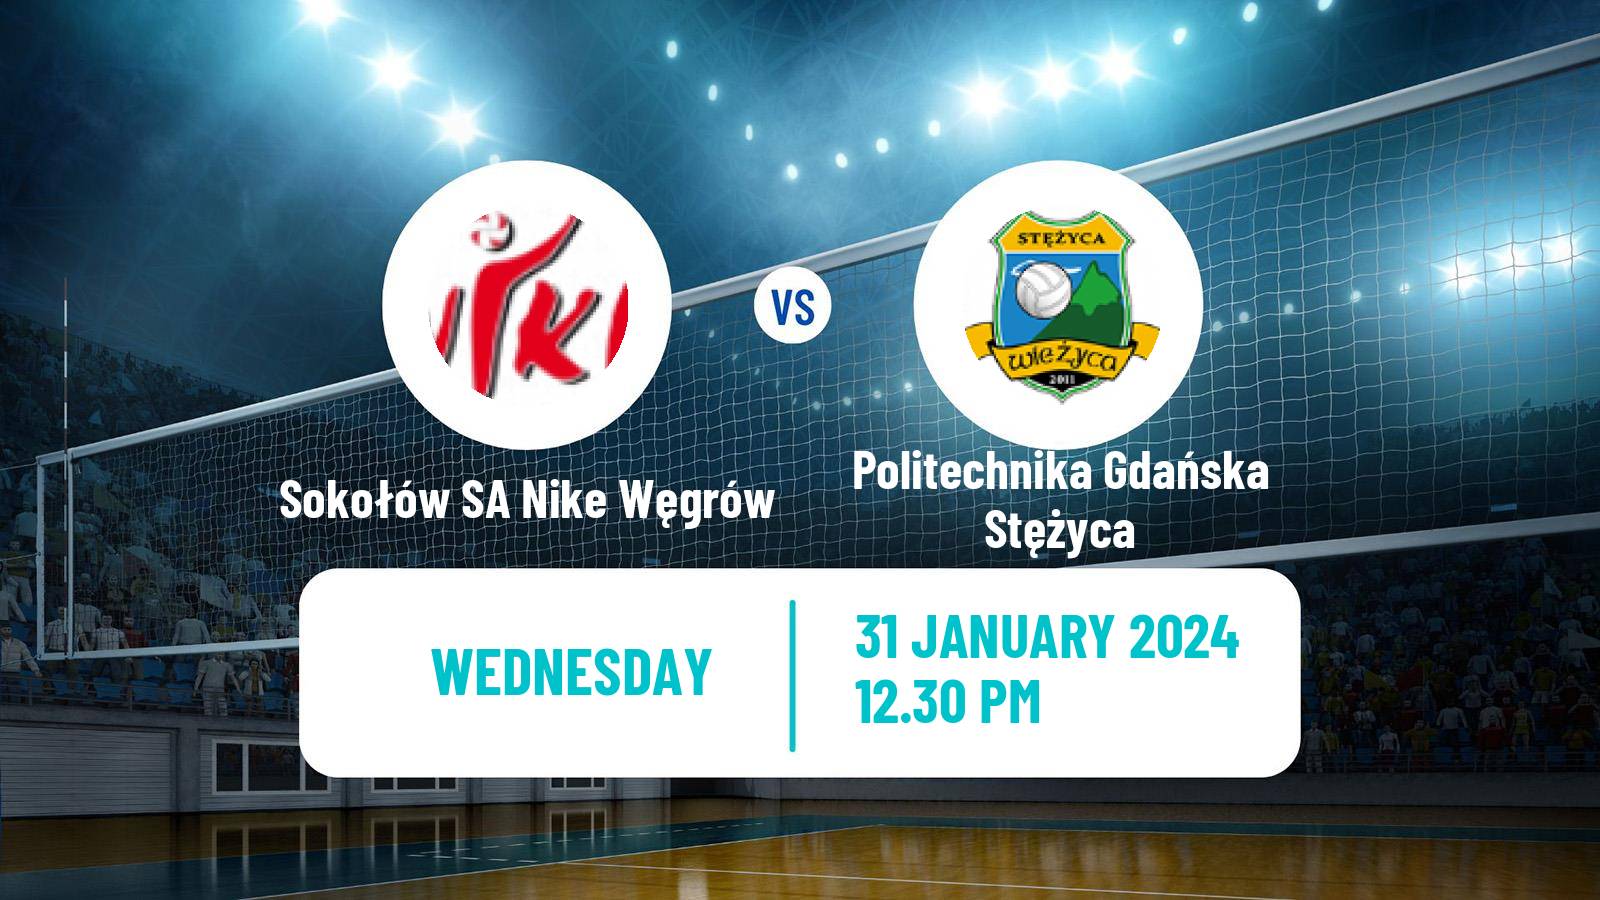 Volleyball Polish I Liga Volleyball Women Sokołów SA Nike Węgrów - Politechnika Gdańska Stężyca